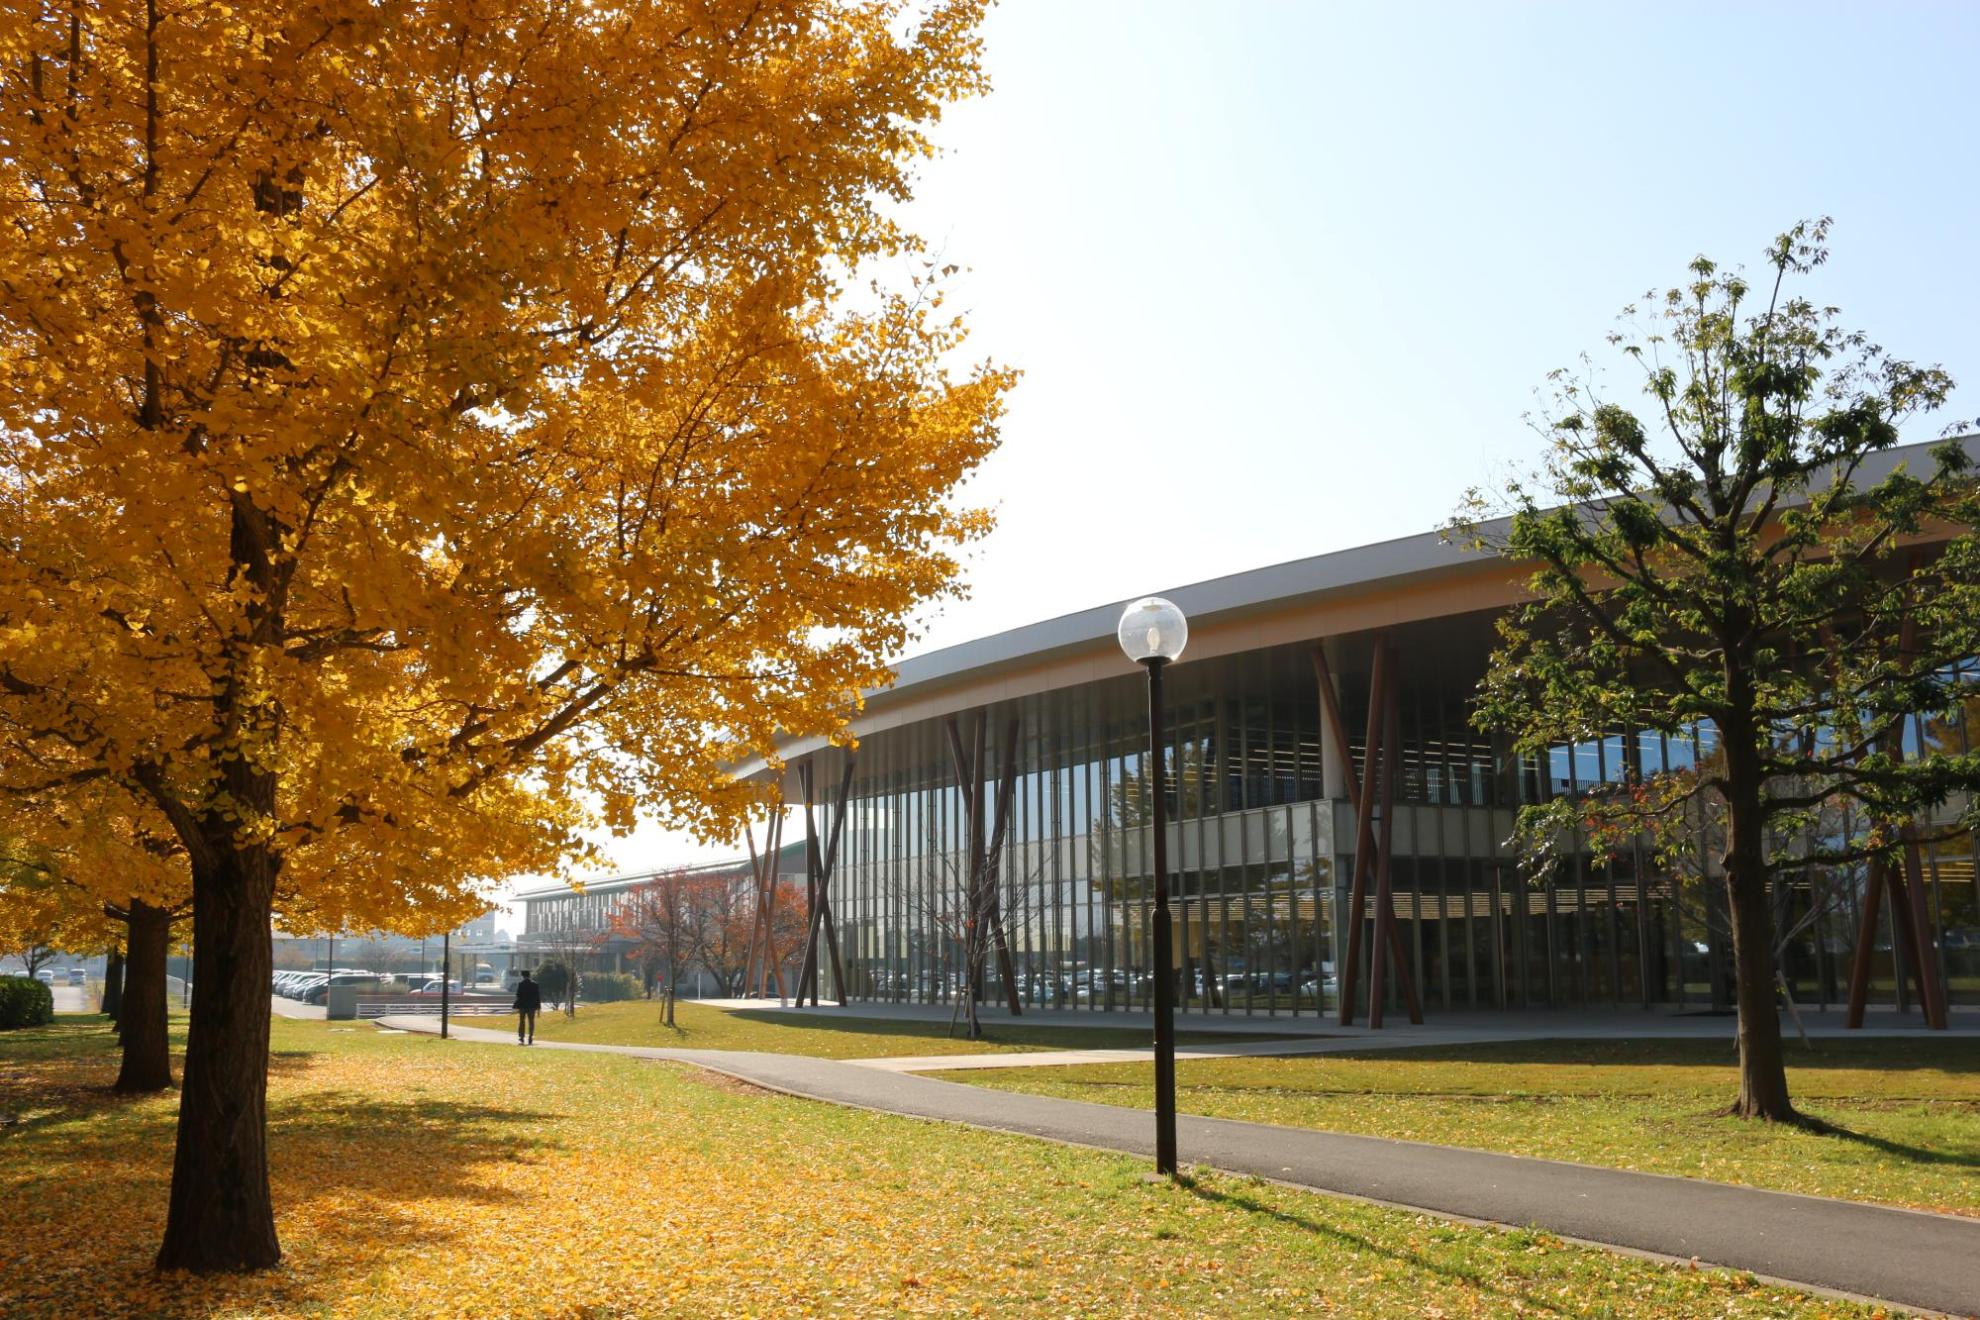 白岡市立図書館〔こもれびの森〕の外観です。乾燥した涼しい日の澄み切った空と、葉が黄色く染まった美しい並木とともに佇んでいます。